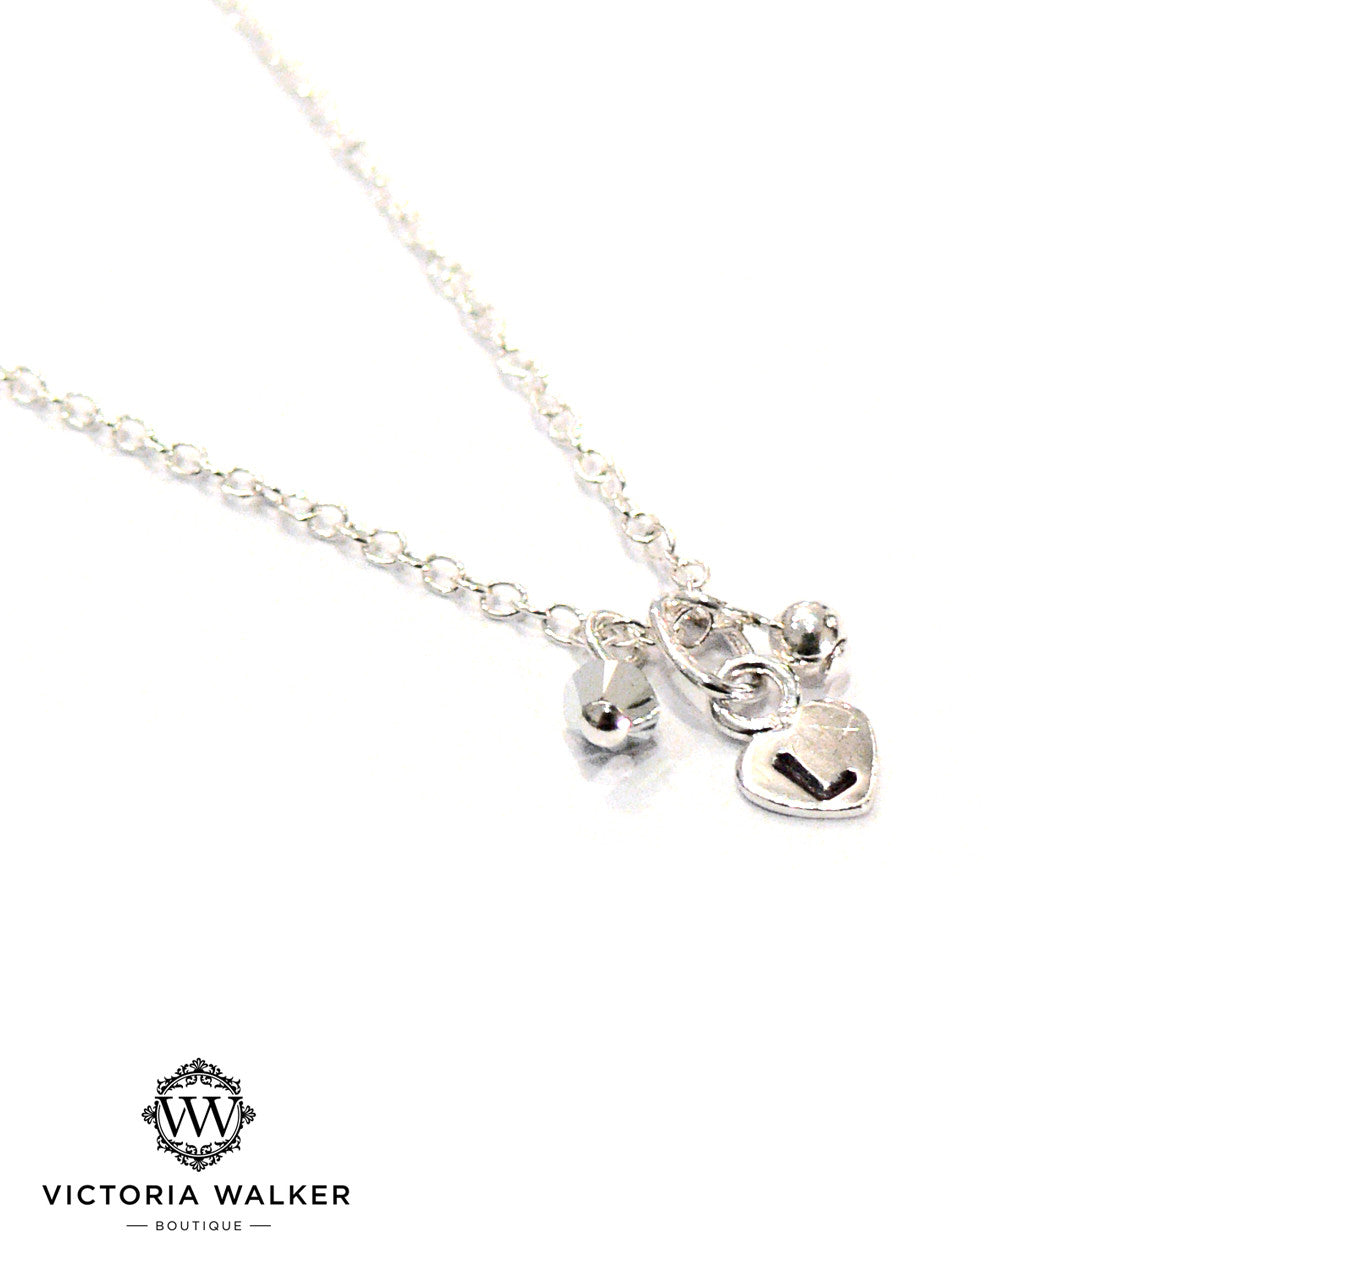 Bespoke Silver Heart Necklace